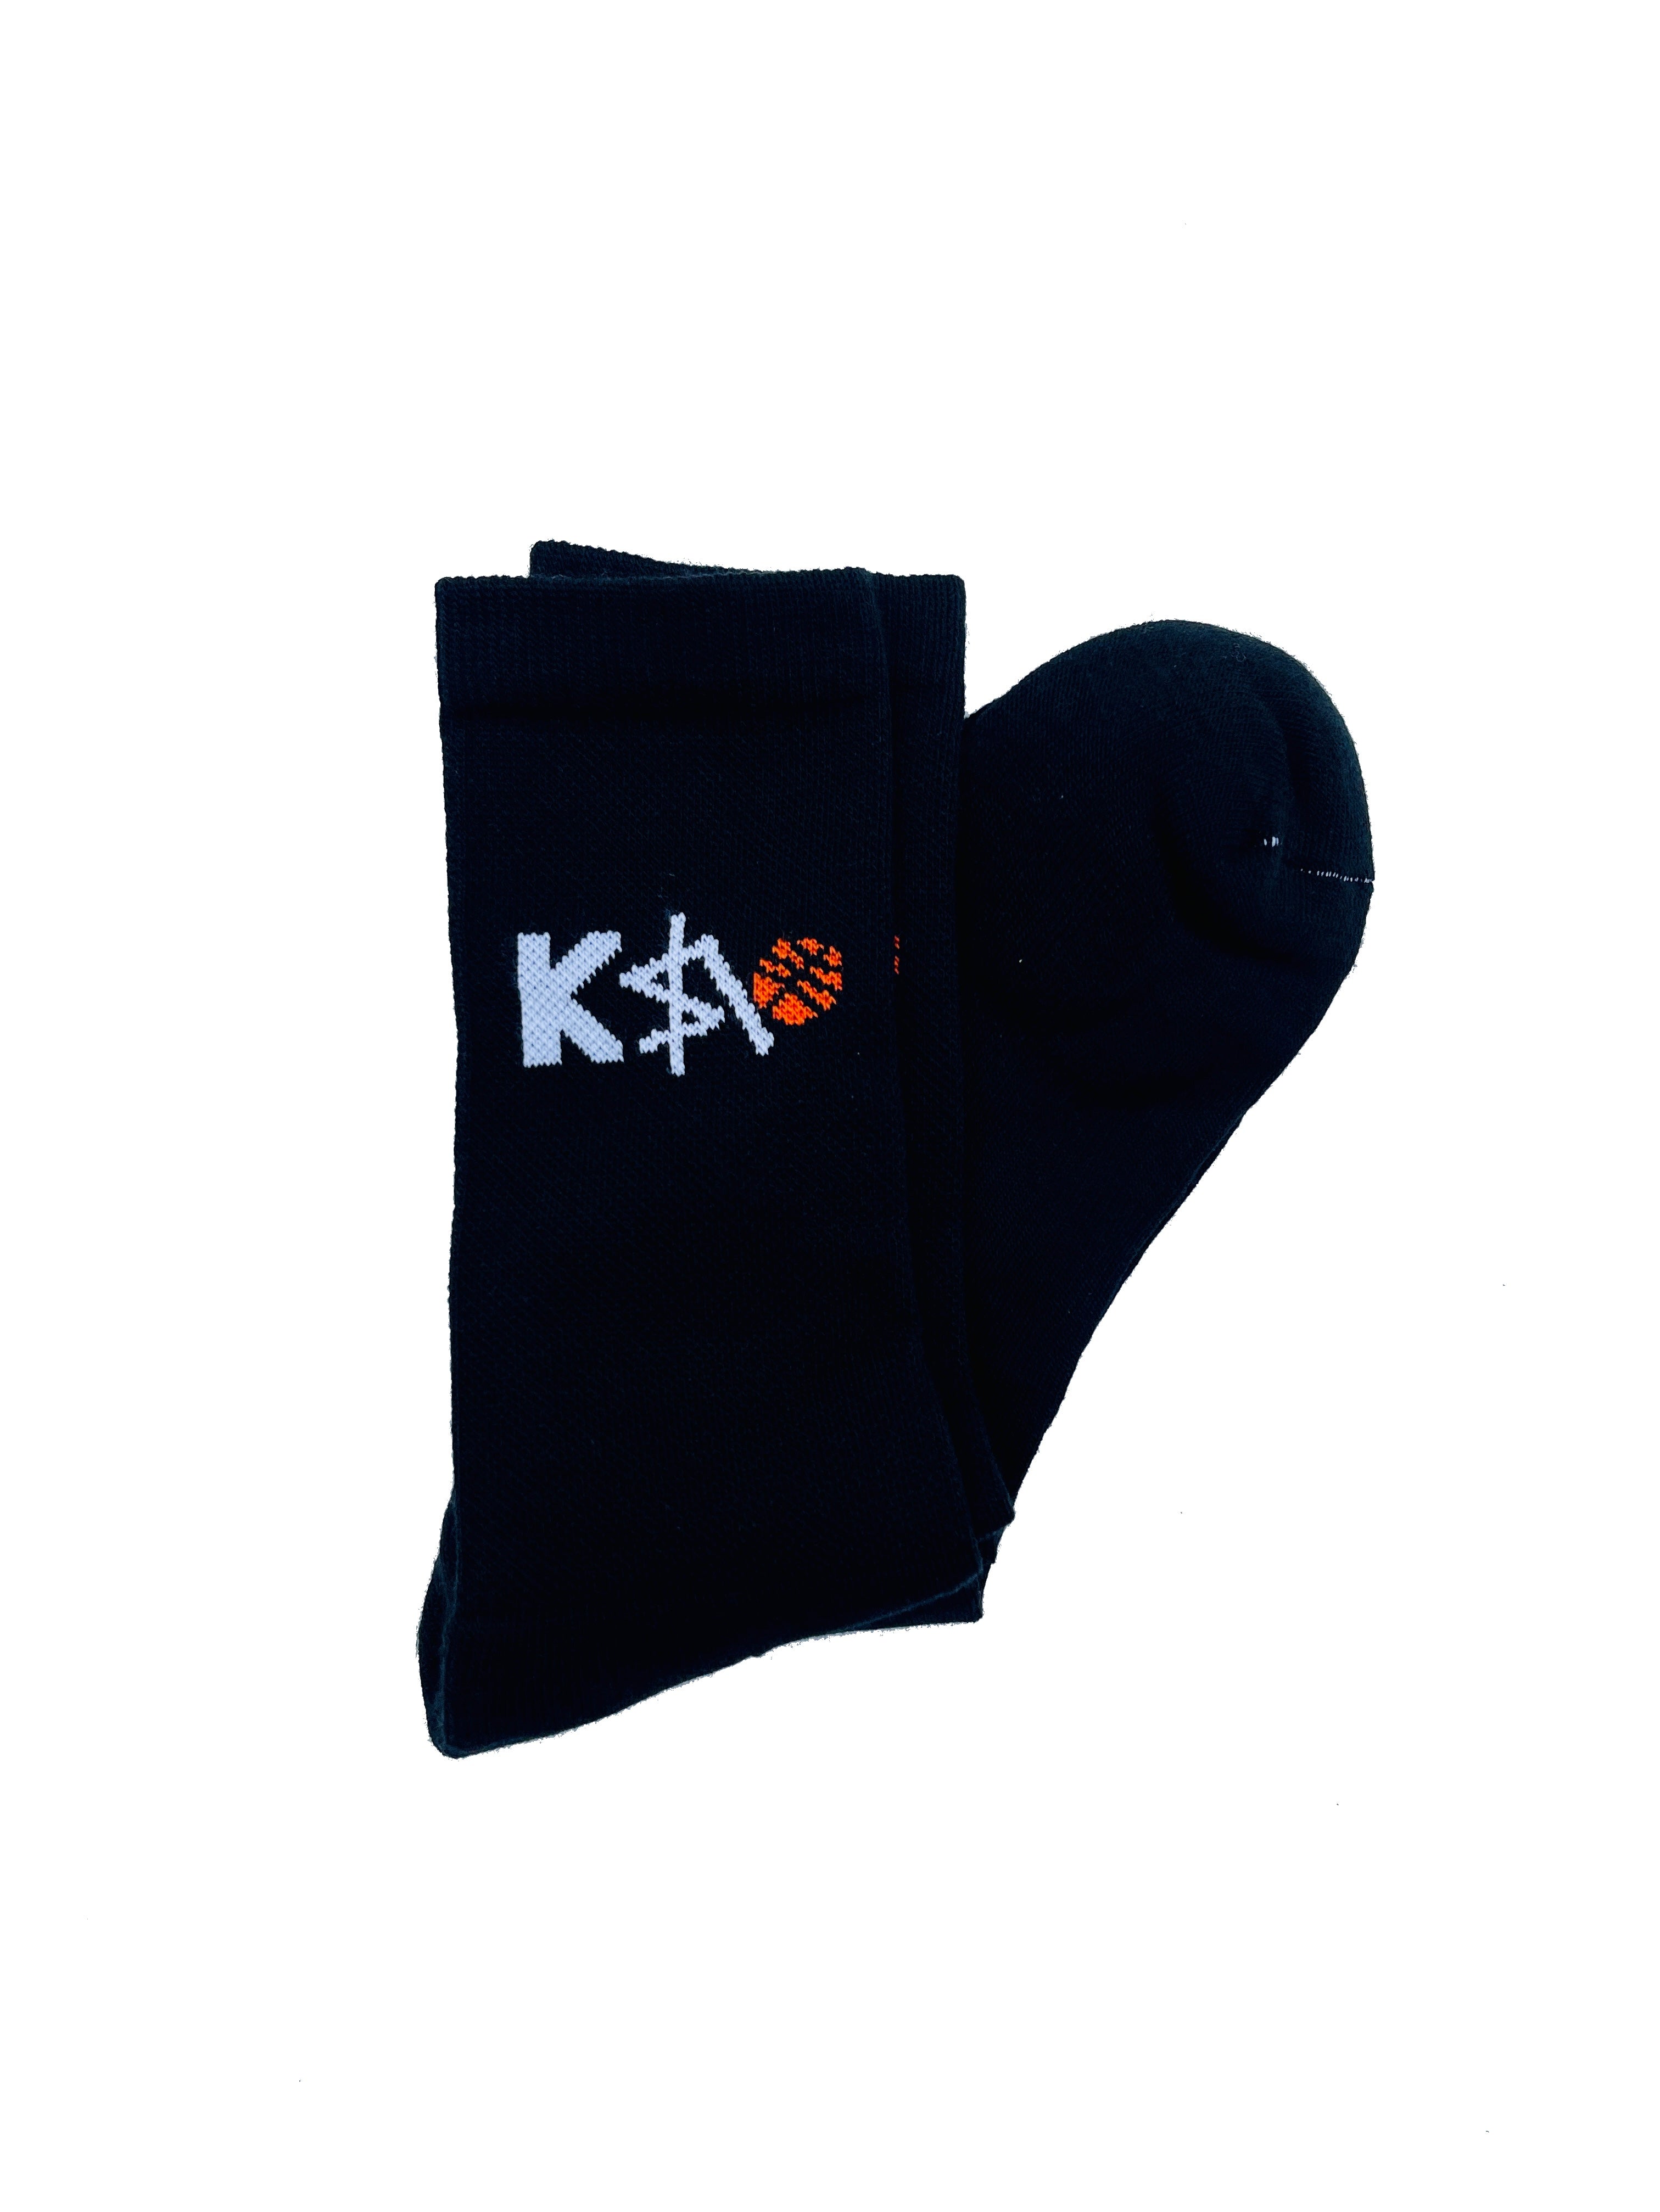 Kzb Logo Socks (Black)